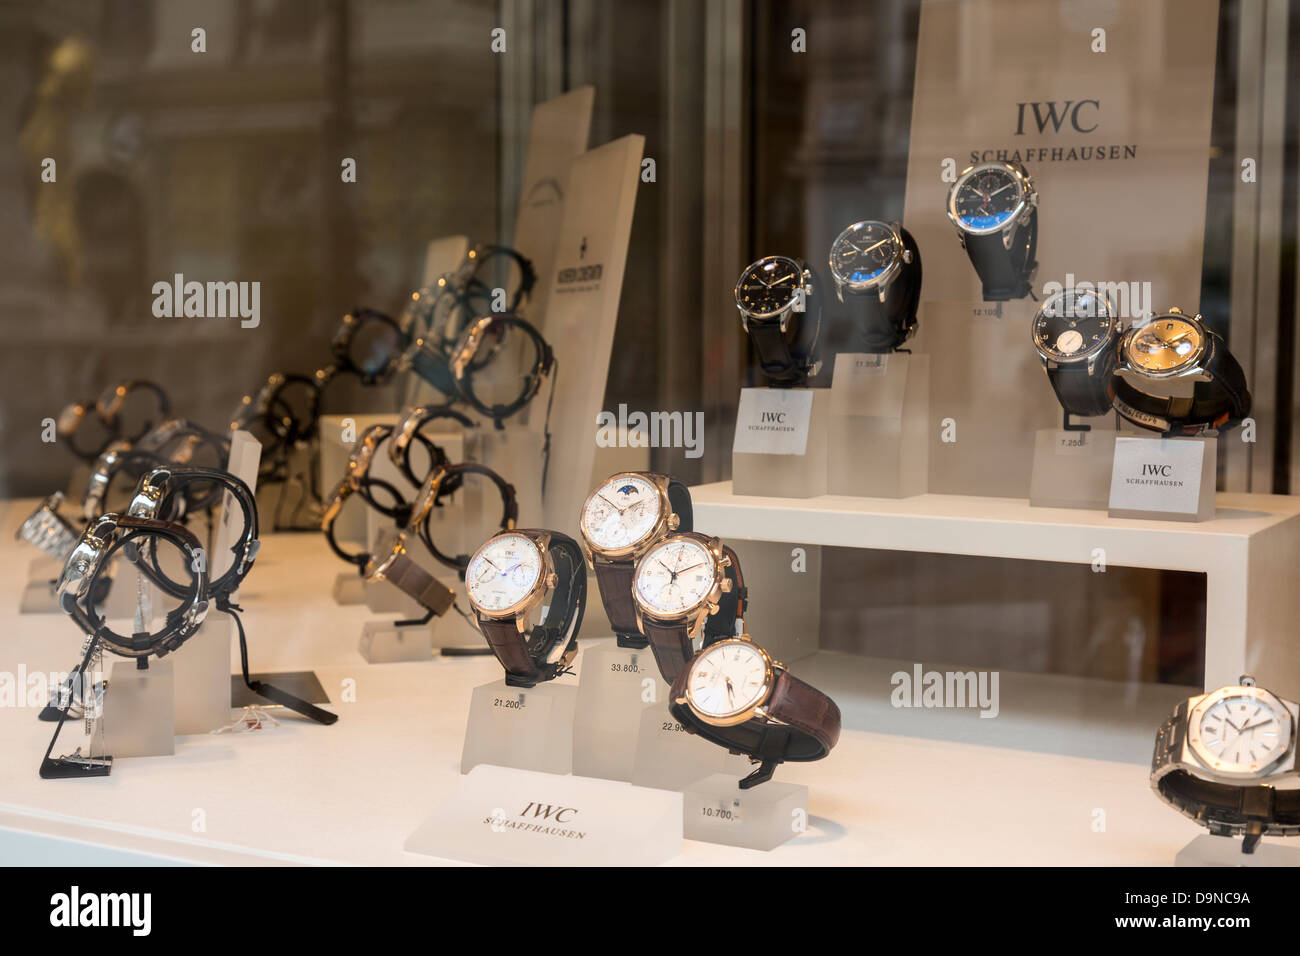 Hübner Luxus Uhren Shop, Wien, Österreich Stockfotografie - Alamy